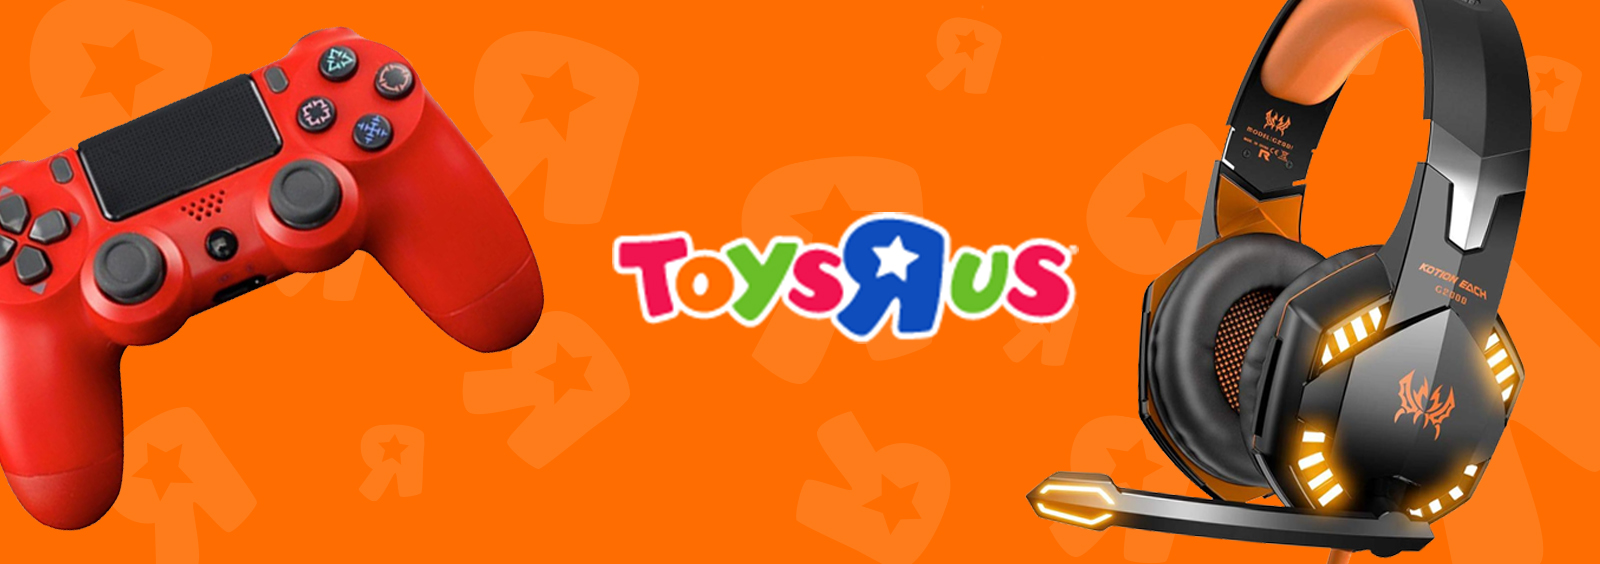 ToysRus - ToysRus